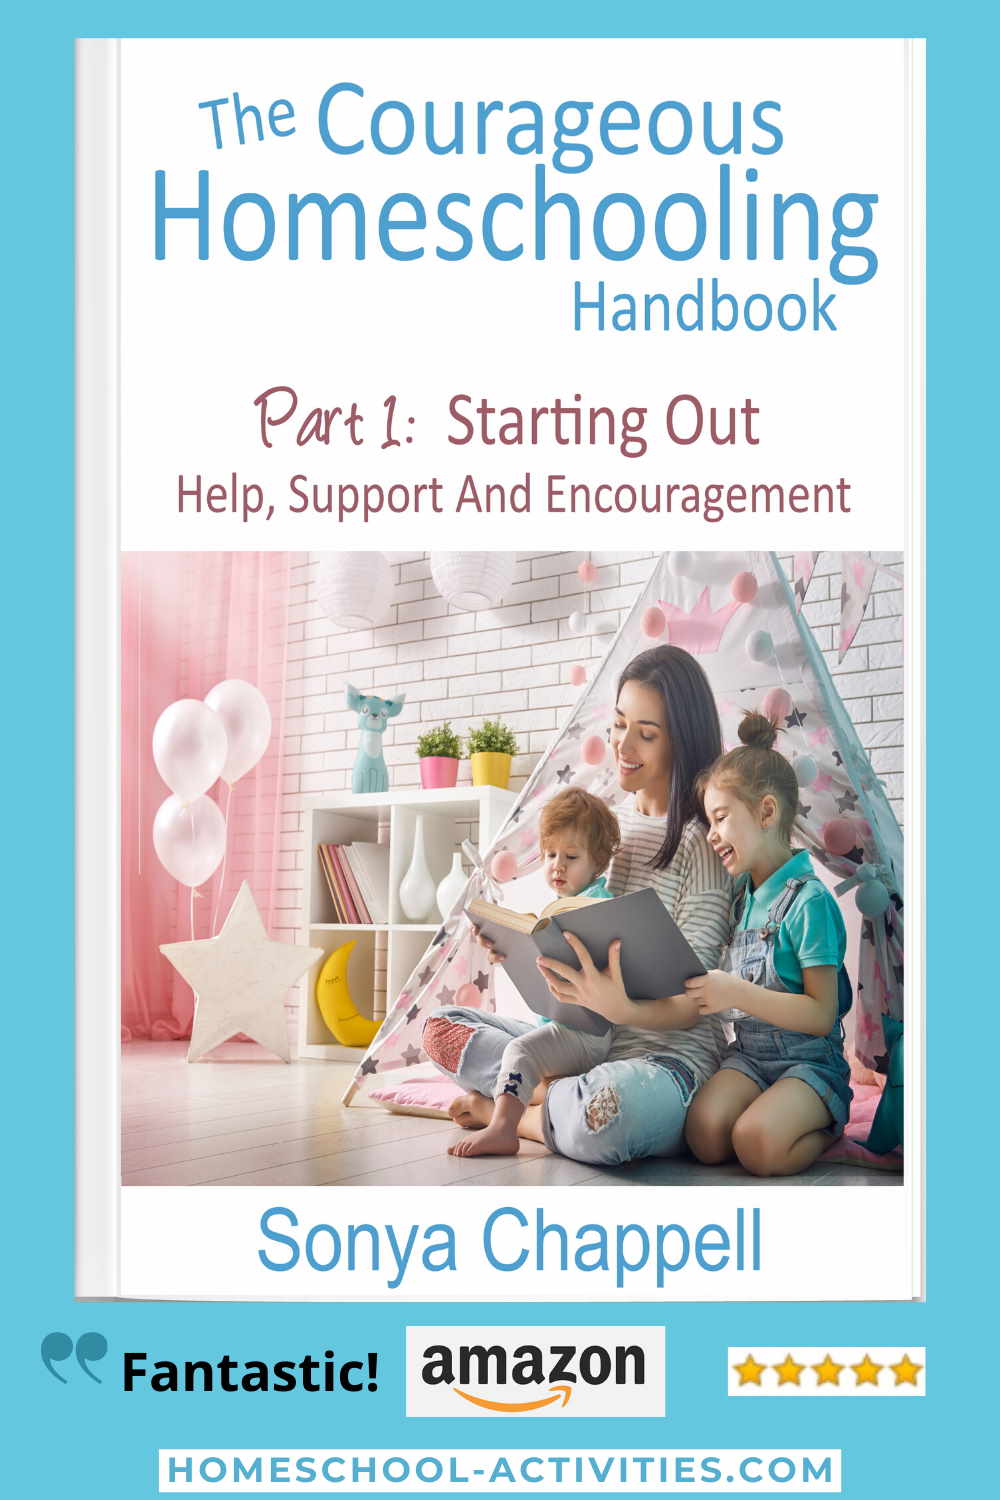 The Courageous Homeschooling Handbook